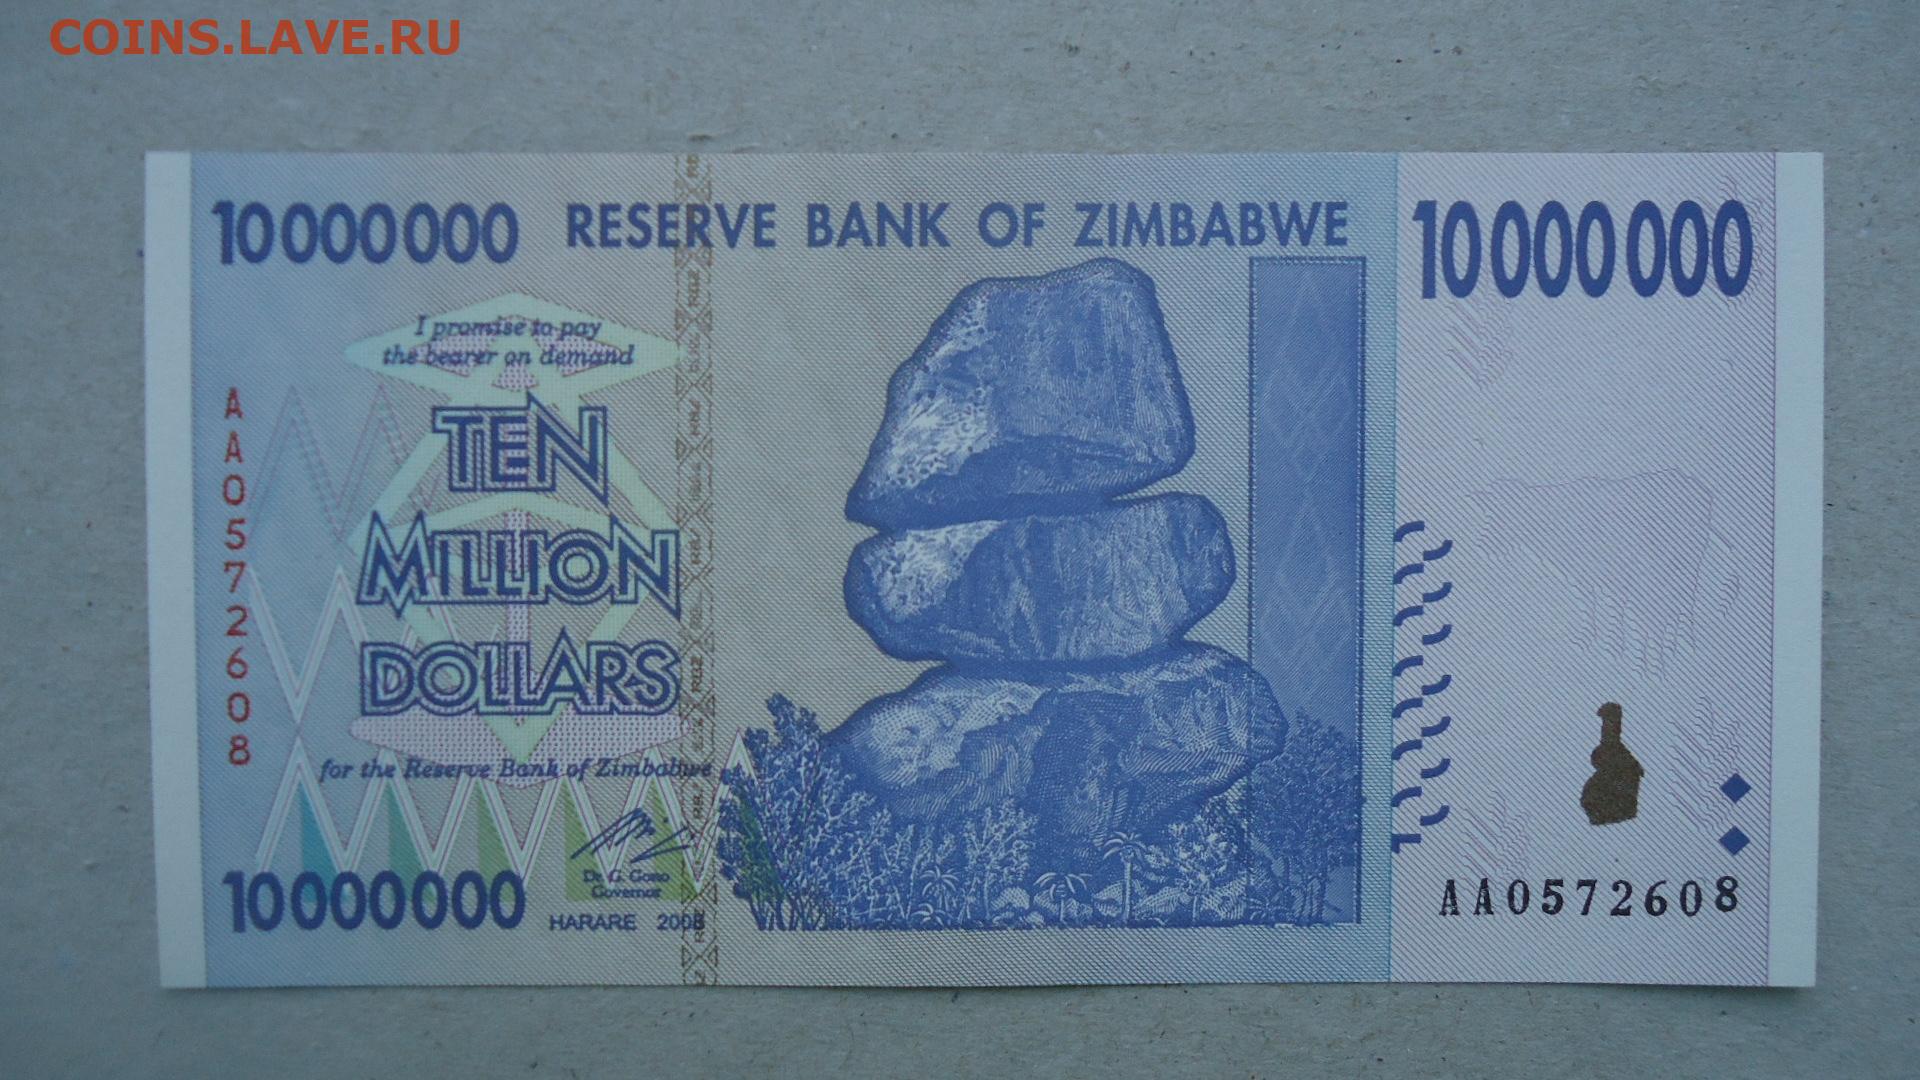 2008 долларов в рублях. 10000000000 Долларов Зимбабве. Зимбабвийский доллар 10000000000 долларов. Т 10000000000. 10000000000 + 10000000000 =.